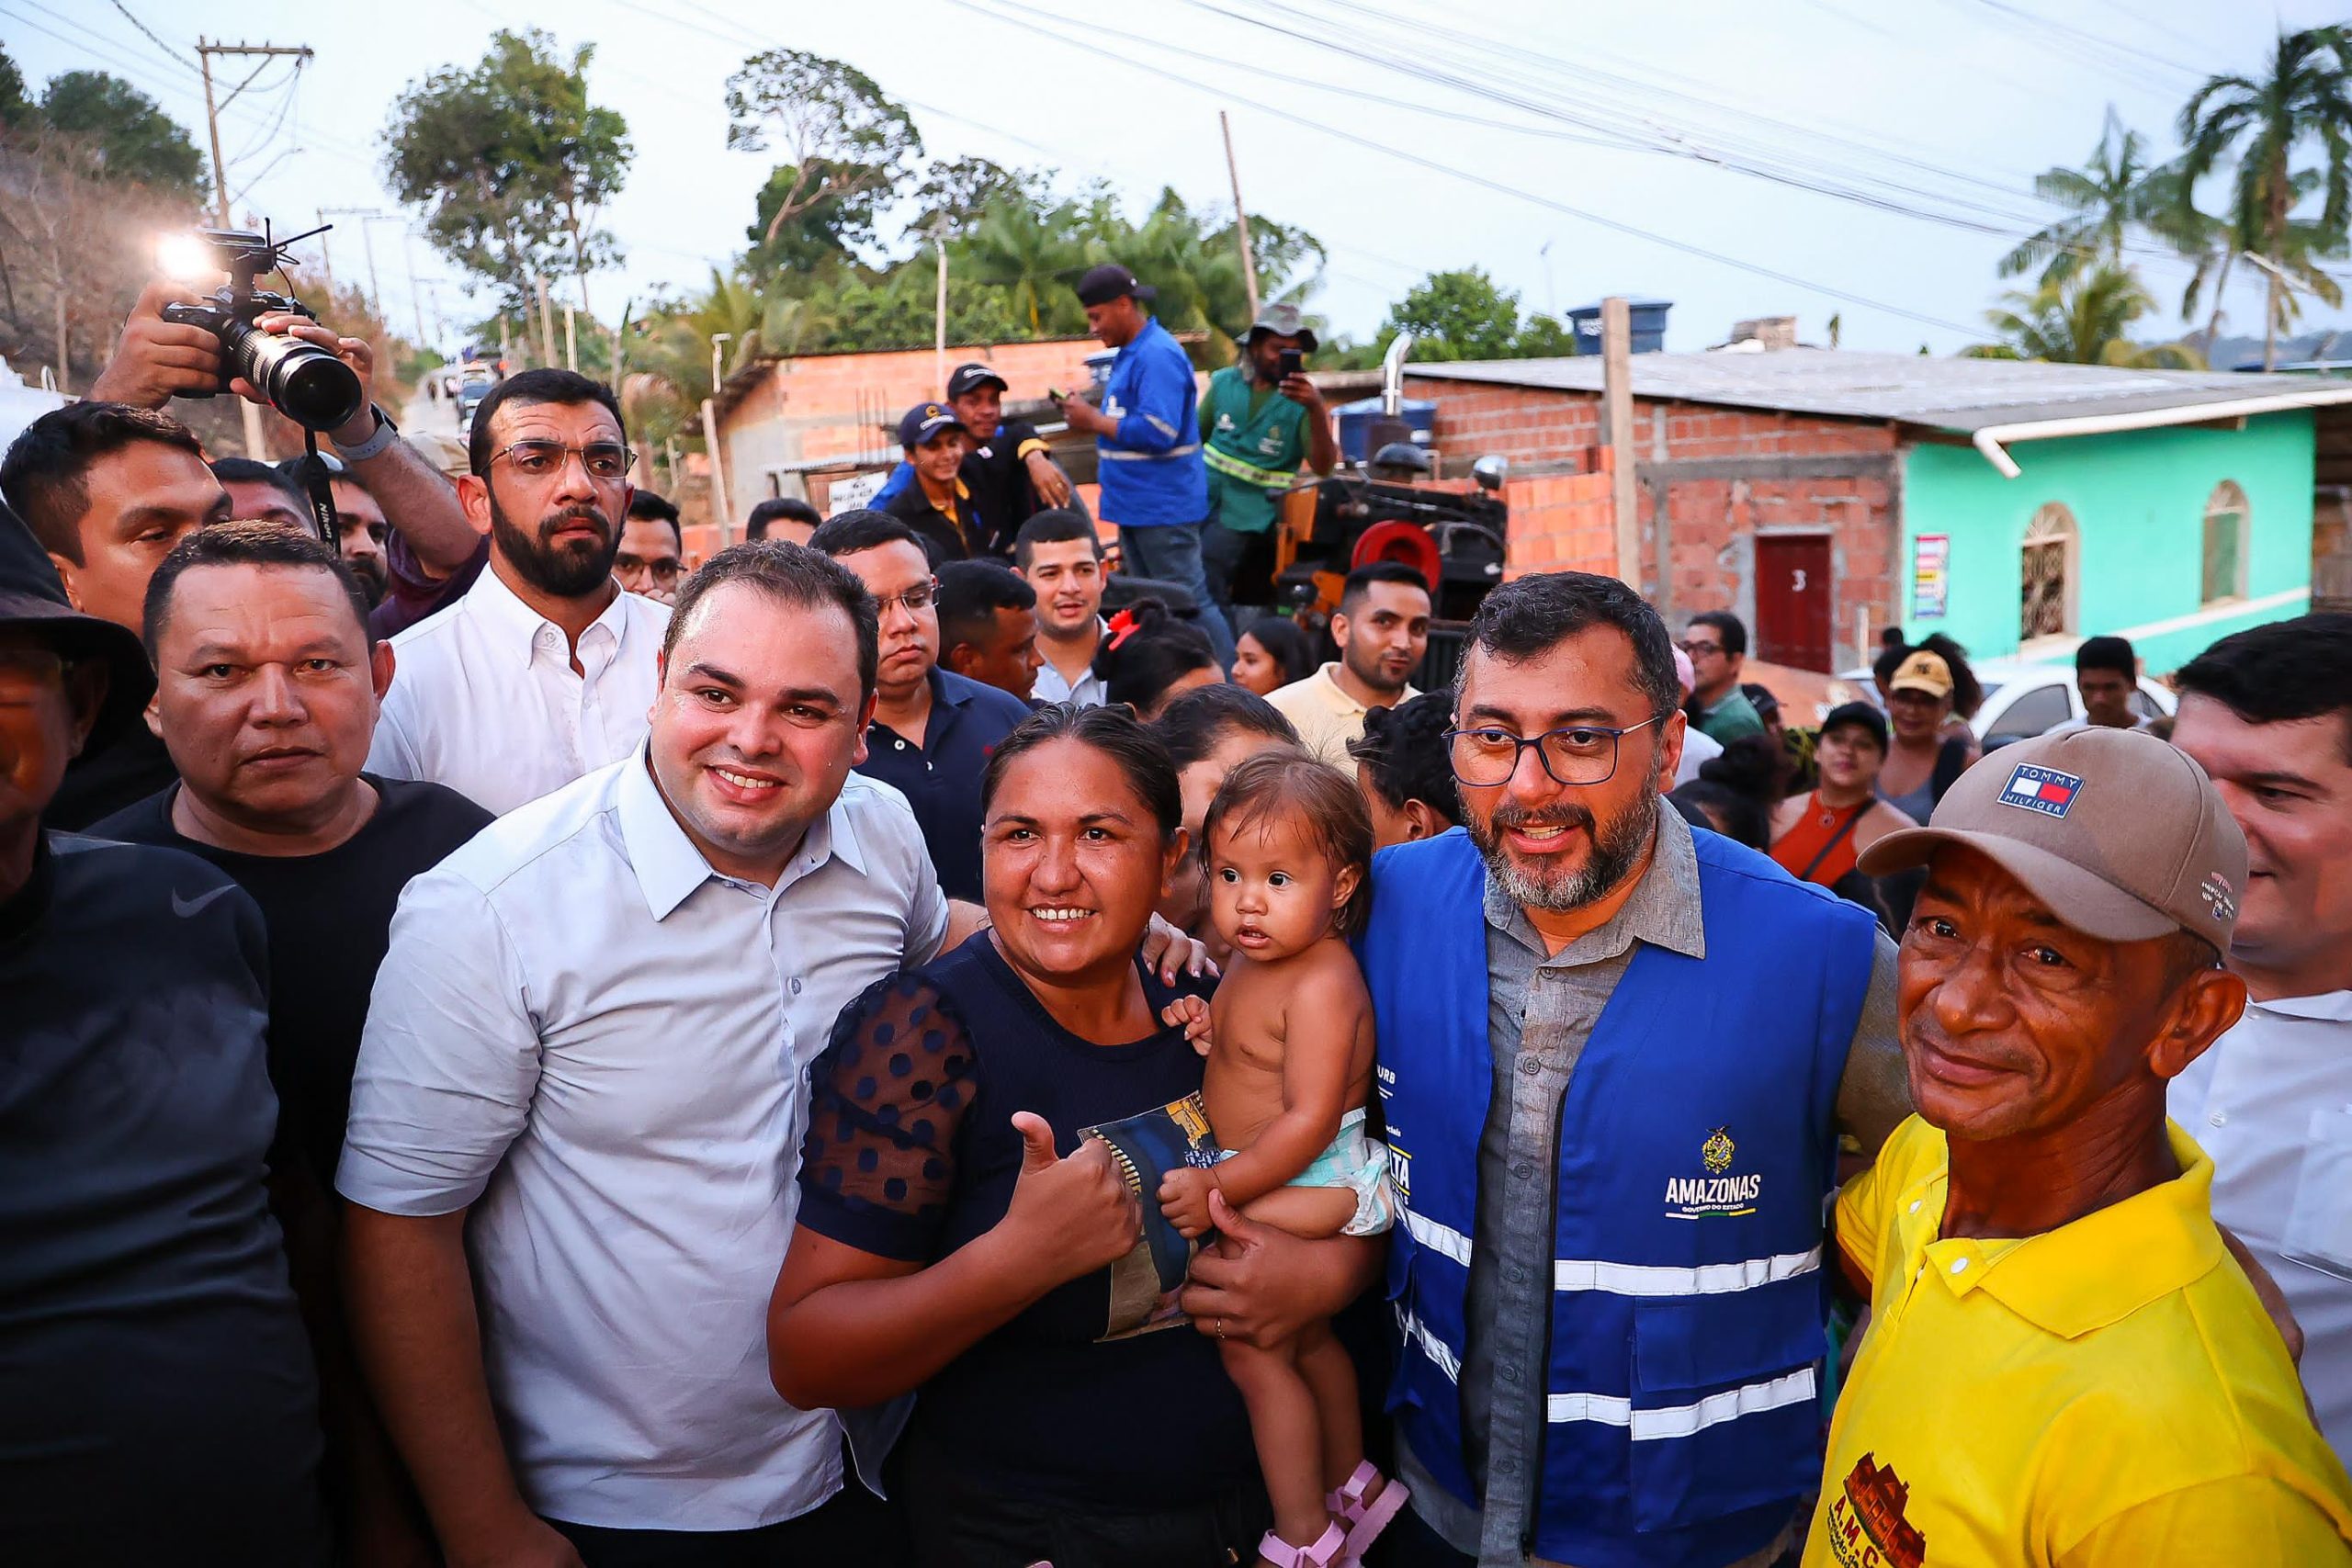 Roberto Cidade ultrapassa Menezes e assume a terceira colocação nas intenções de votos para a Prefeitura de Manaus